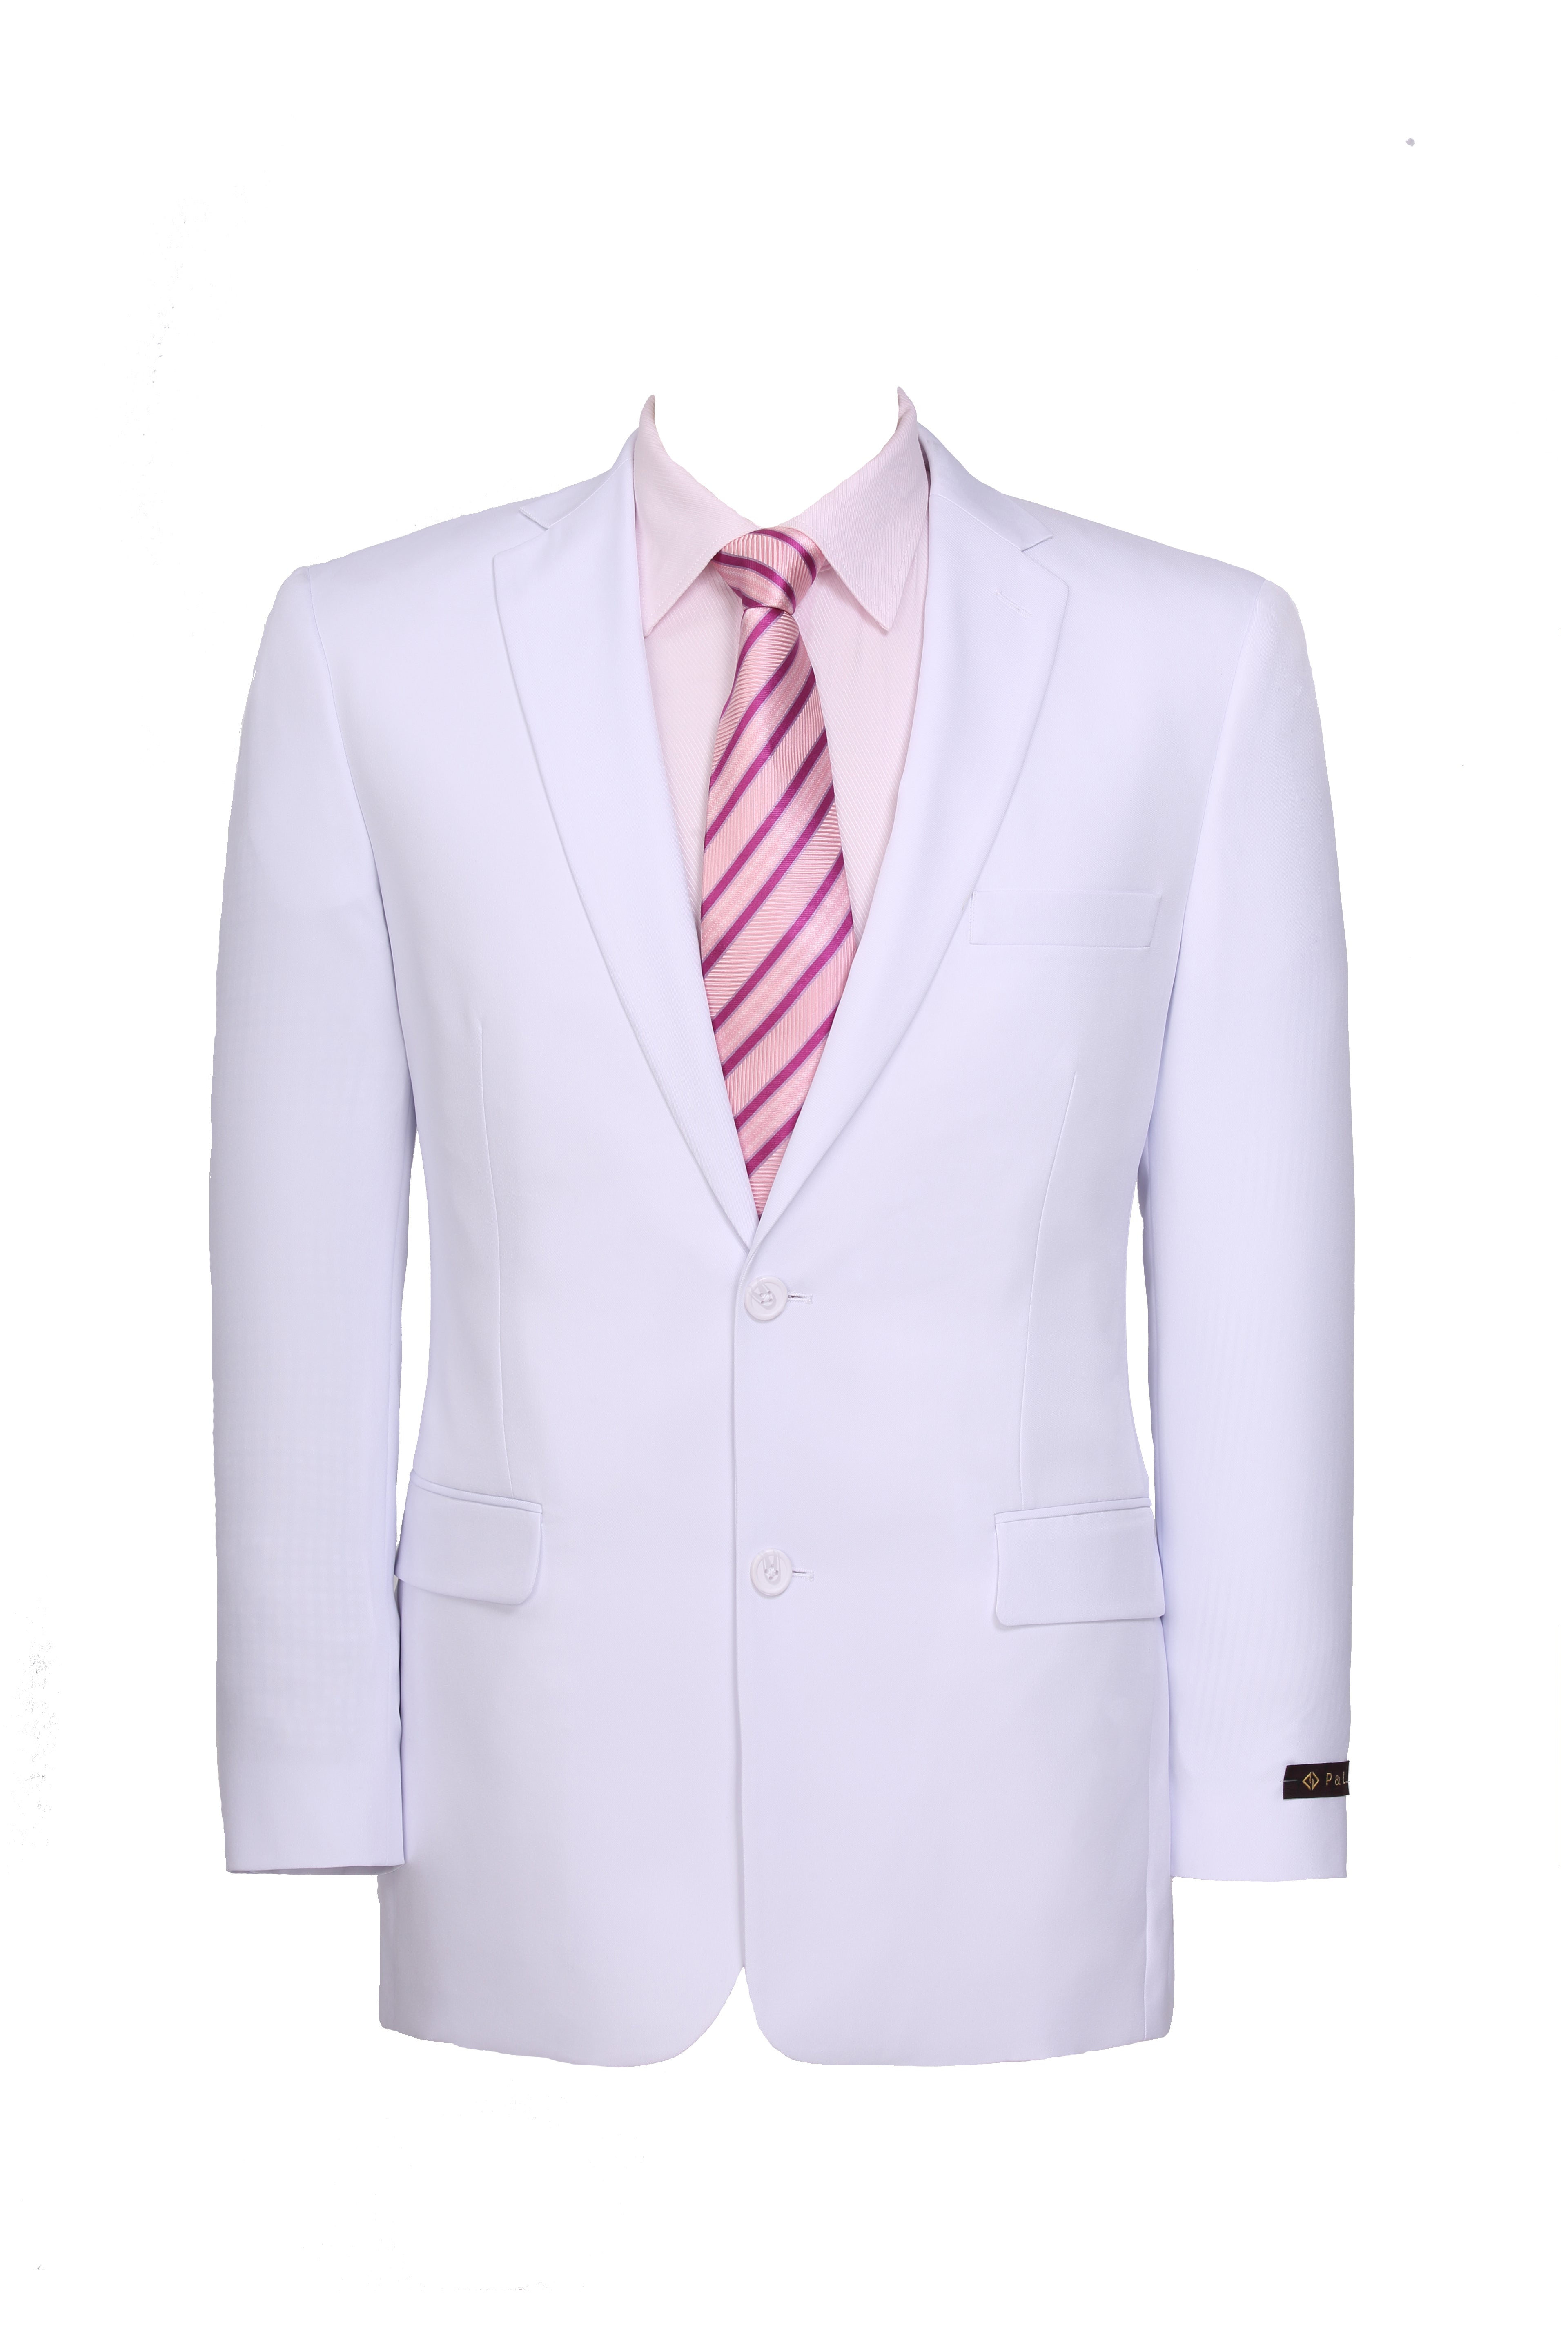 Men Suit Double Button Designer 2 Piece Suit Formal Suit for